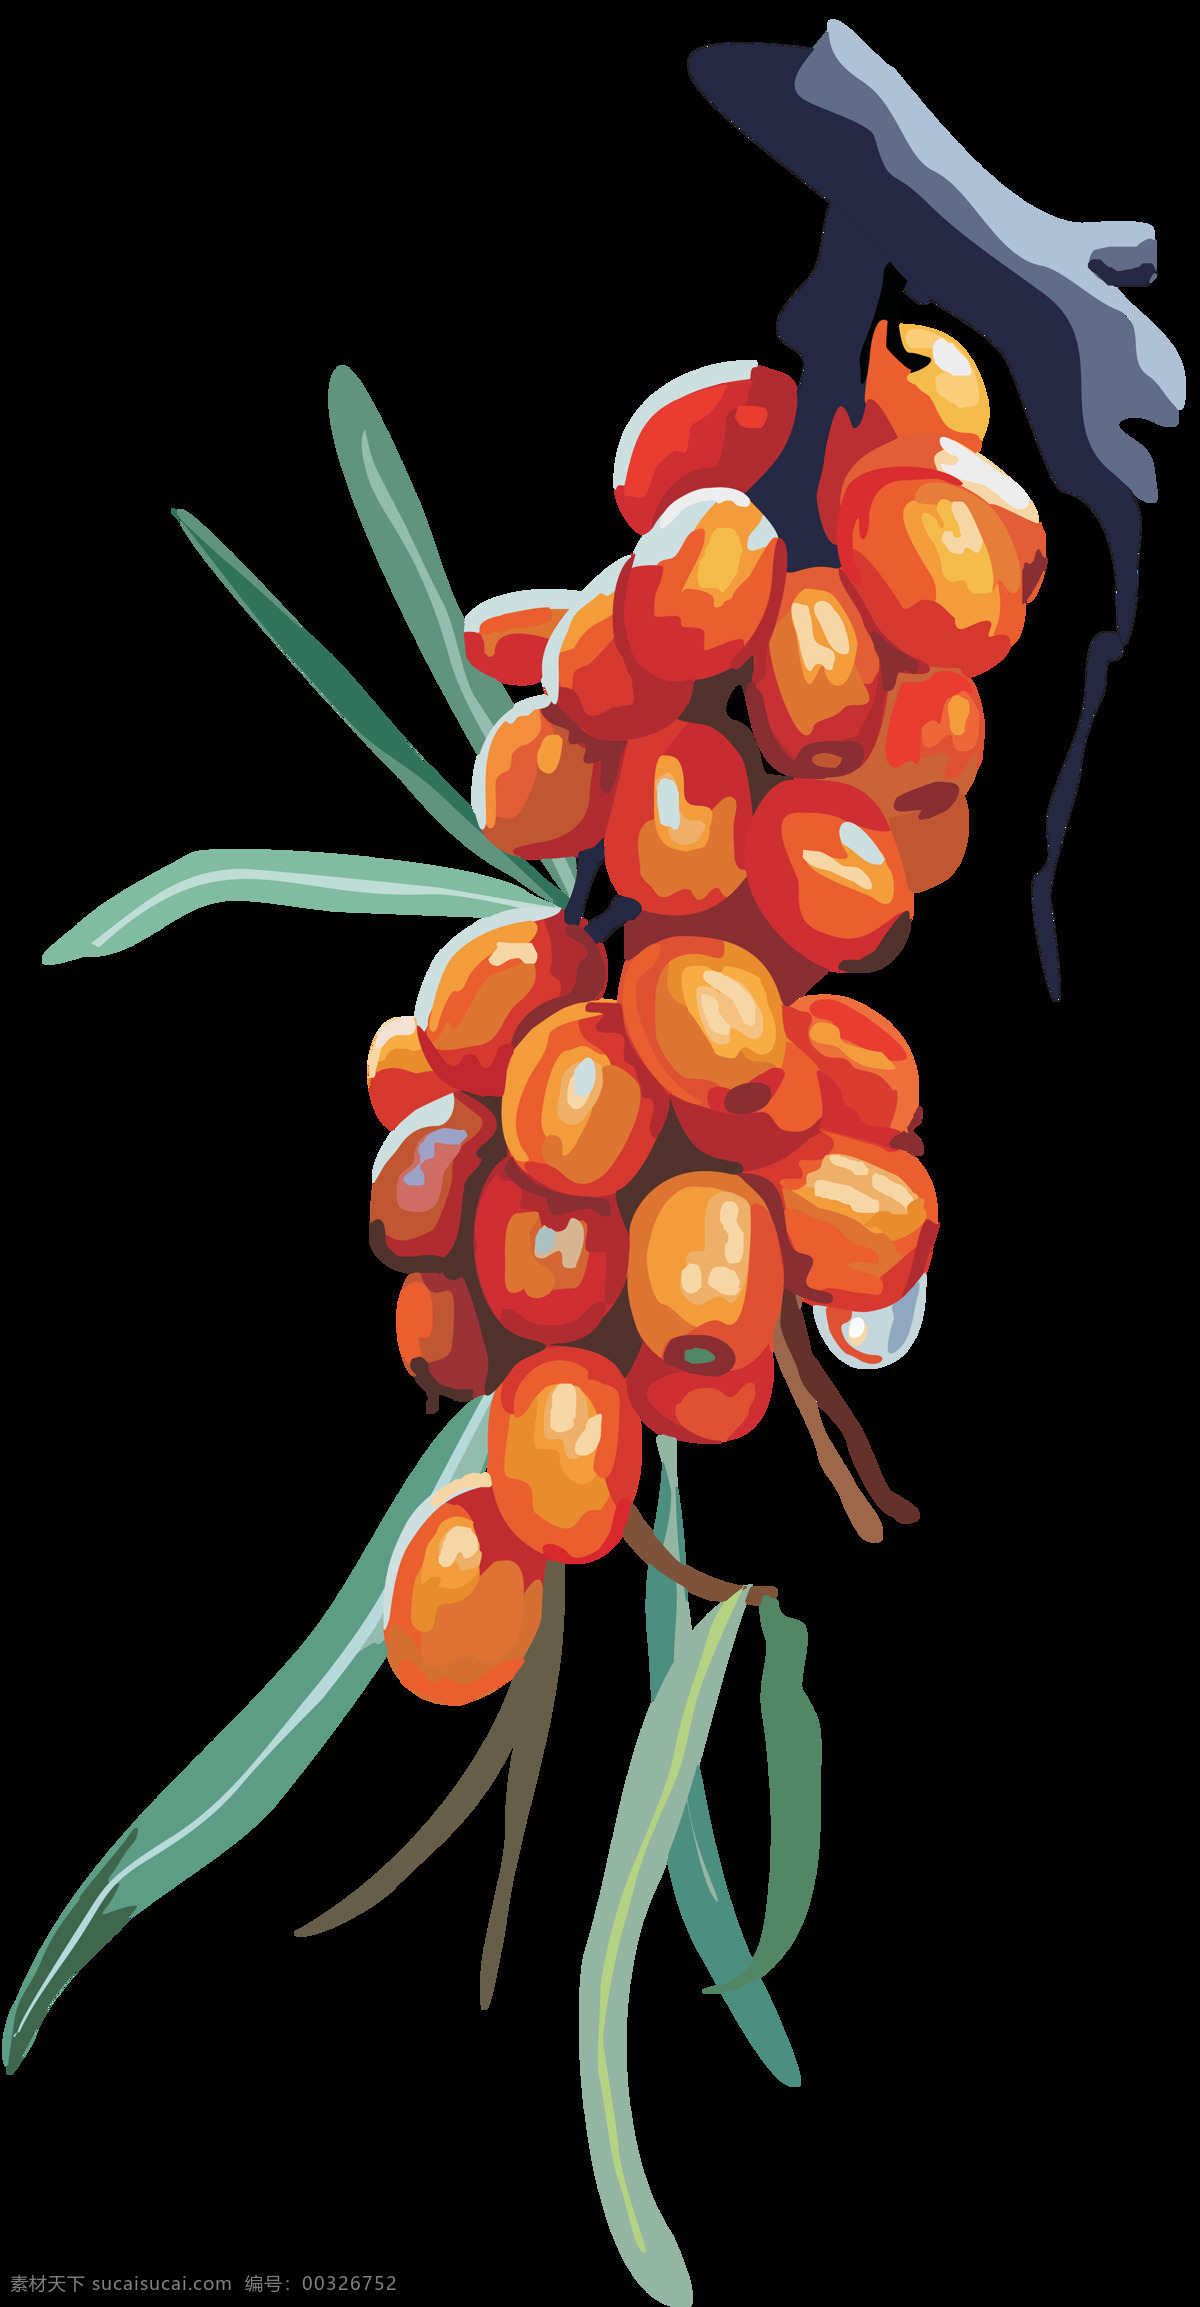 沙棘果 果实 黄果 野果 自然 原生态 设计素材 自然景观 自然风光 生活用品 生物世界 水果